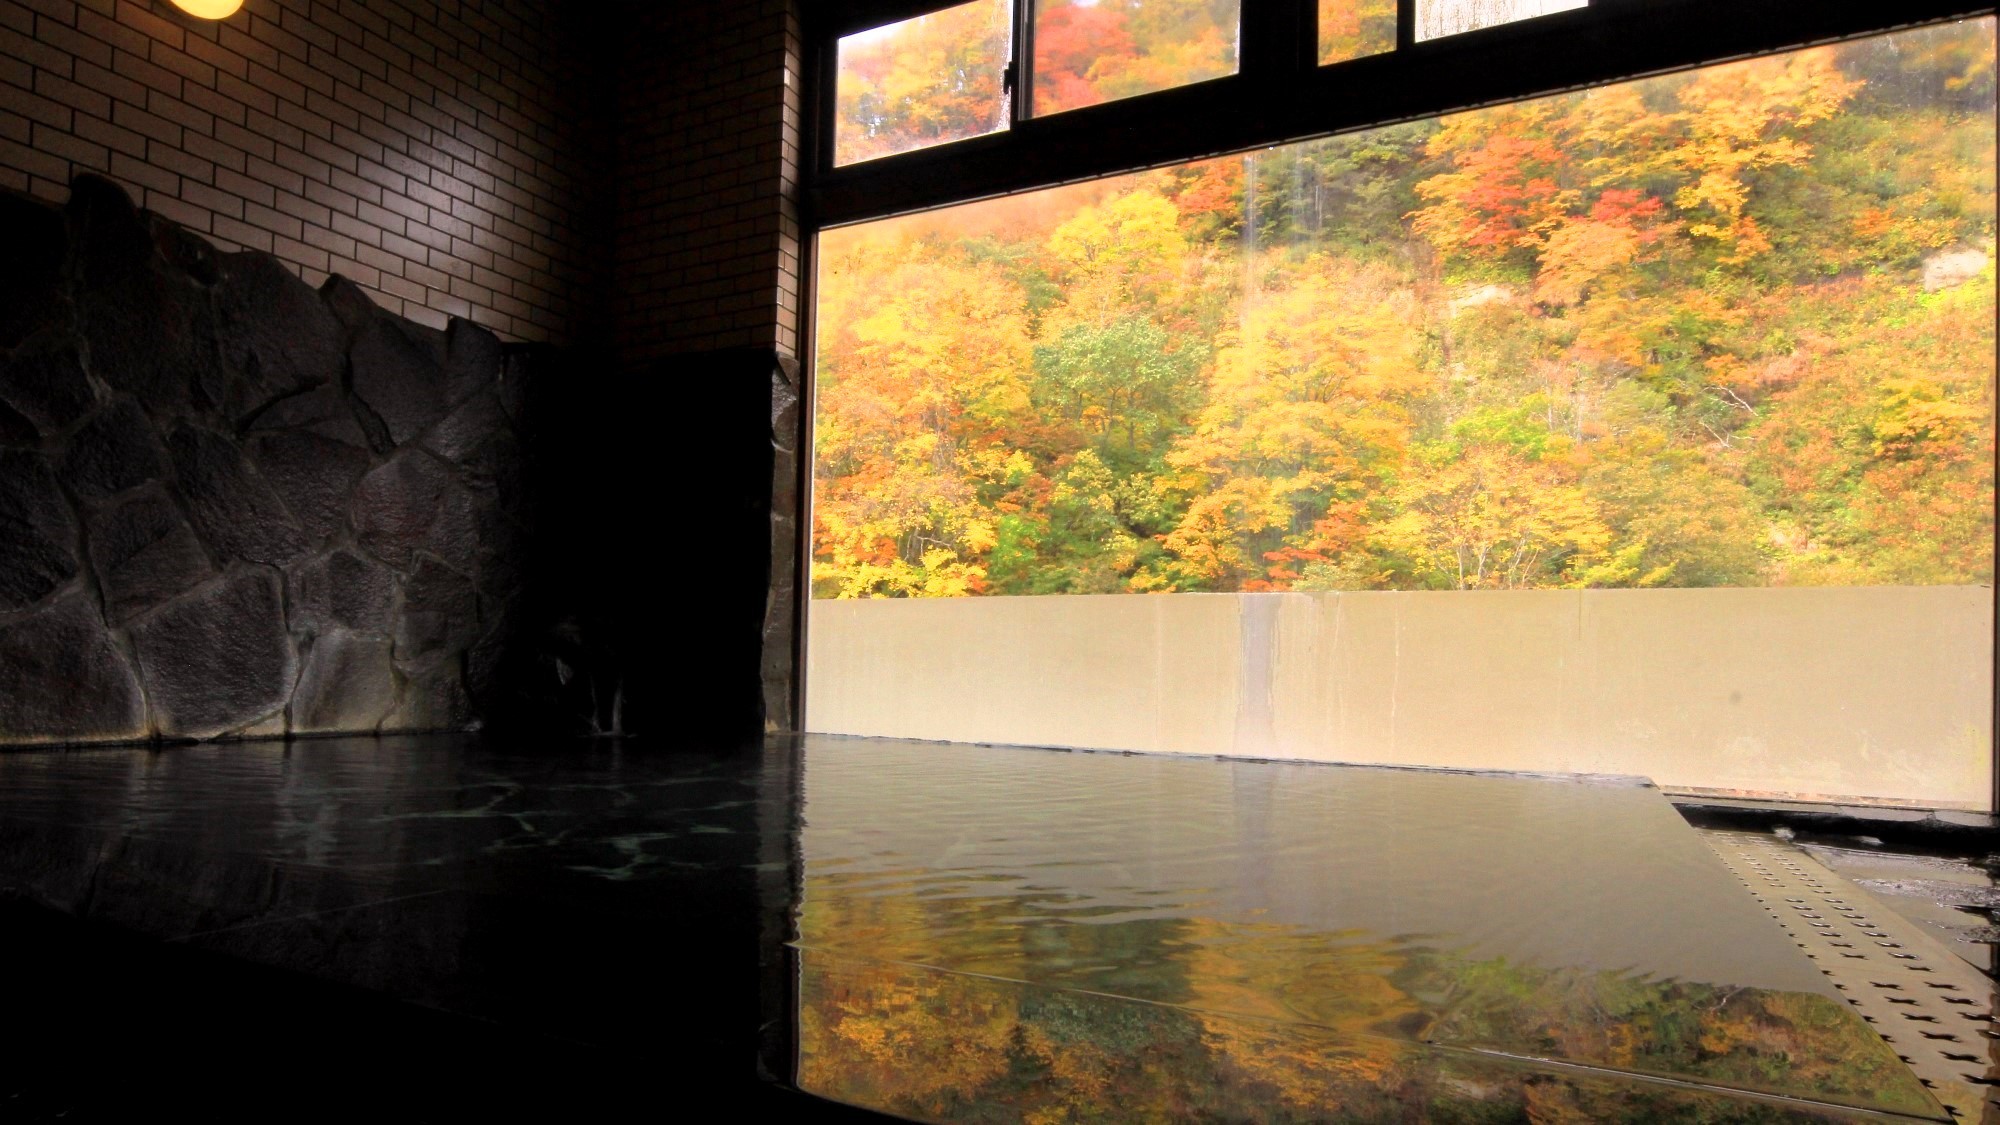 紅葉が有名な秋山郷。内湯からも紅葉狩り